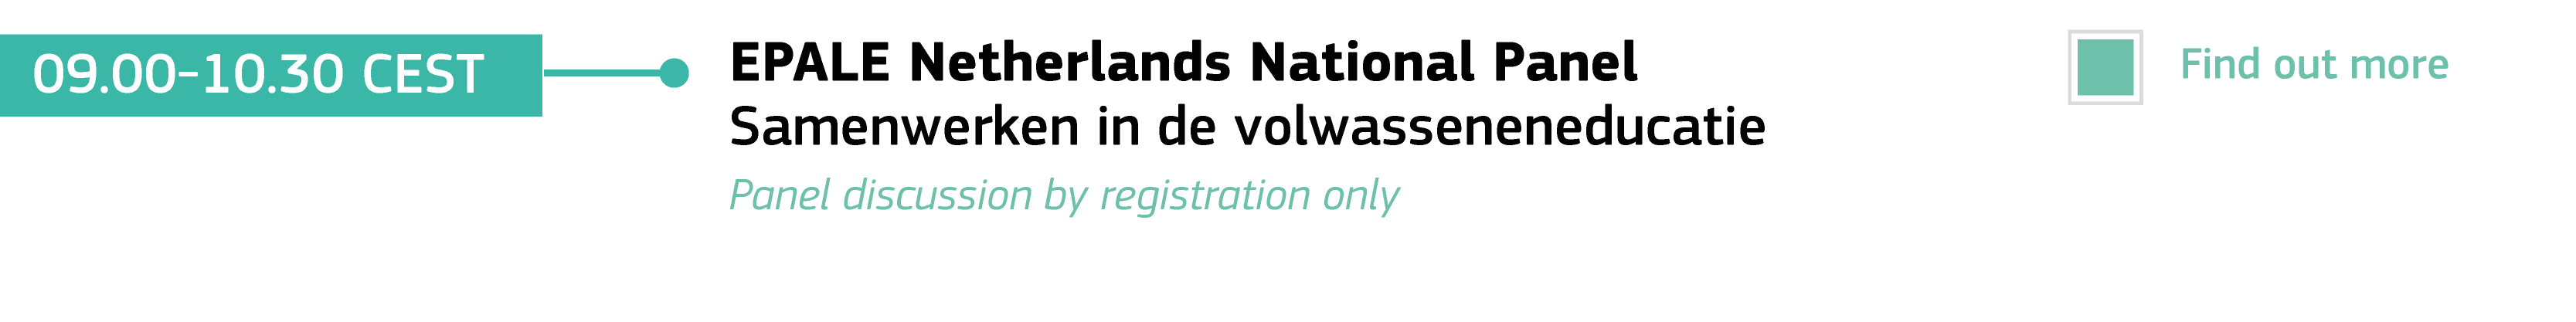 National Panel 14 October - Netherlands